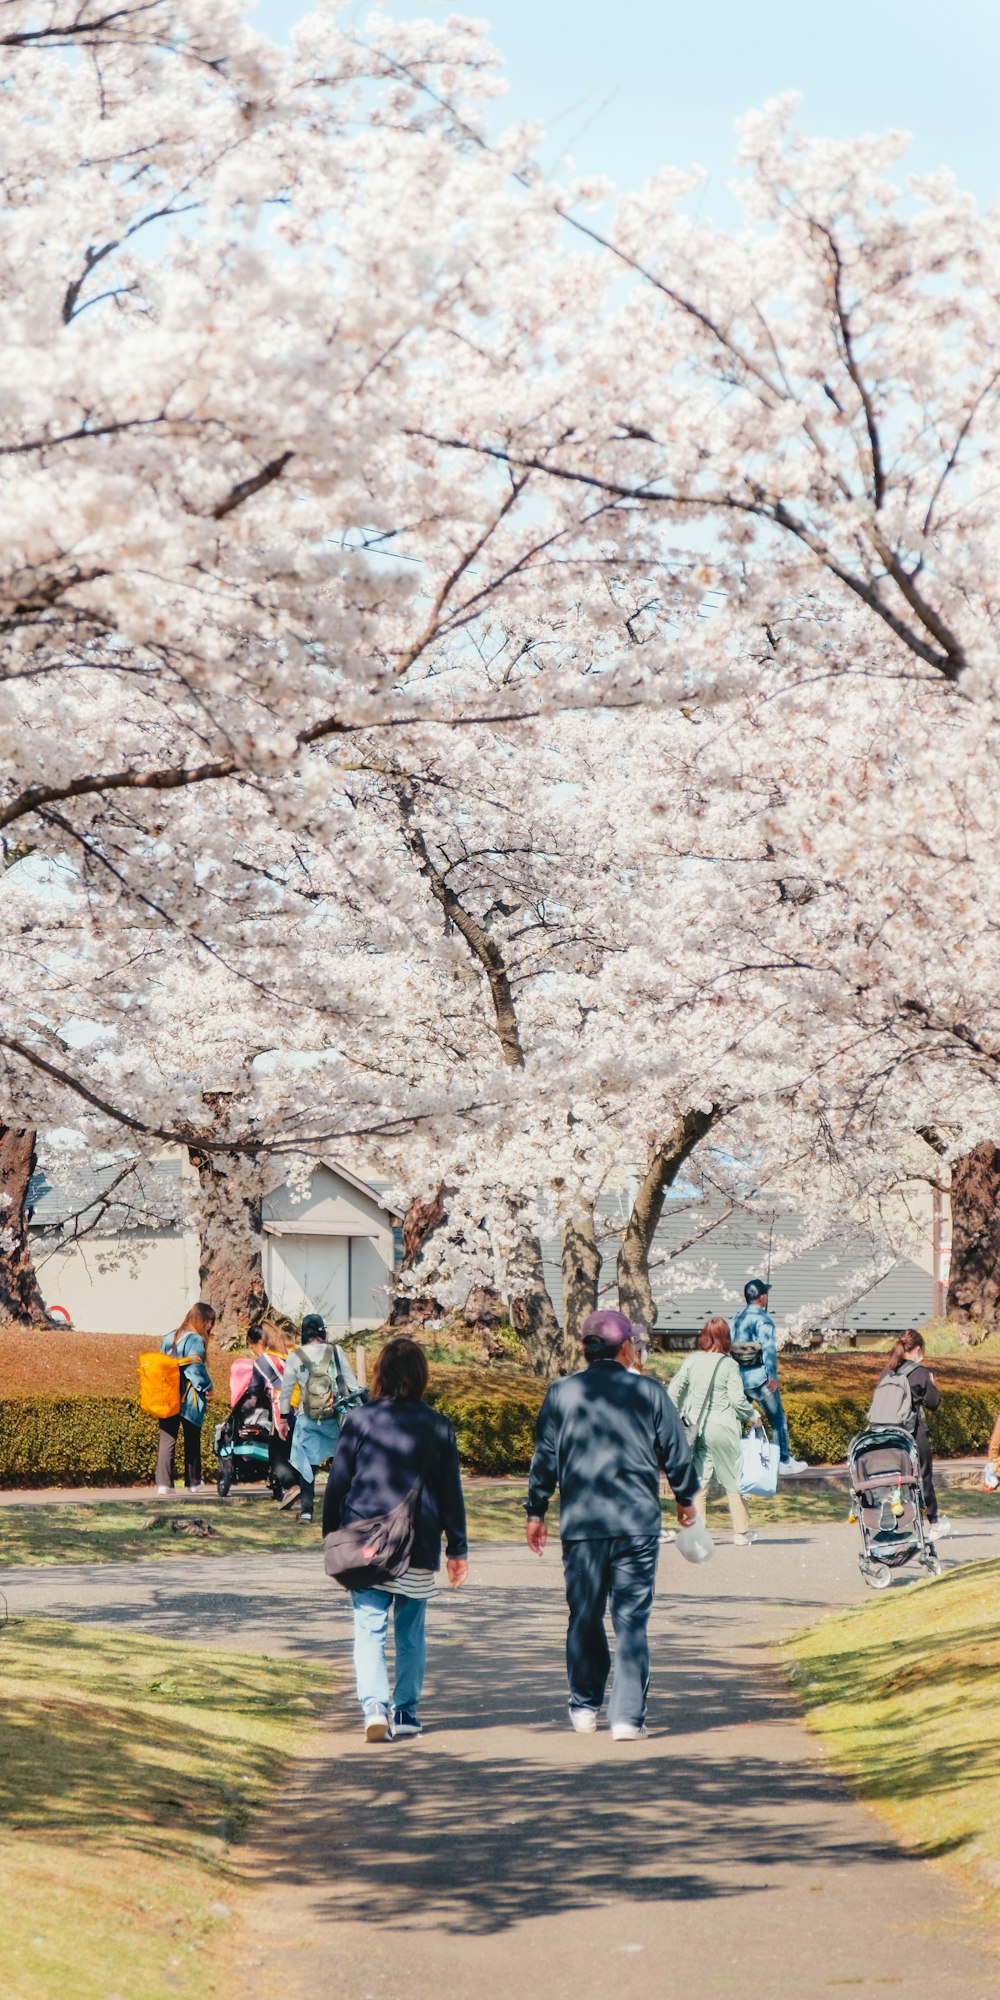 Un grupo de personas caminando por un sendero bajo los cerezos en flor